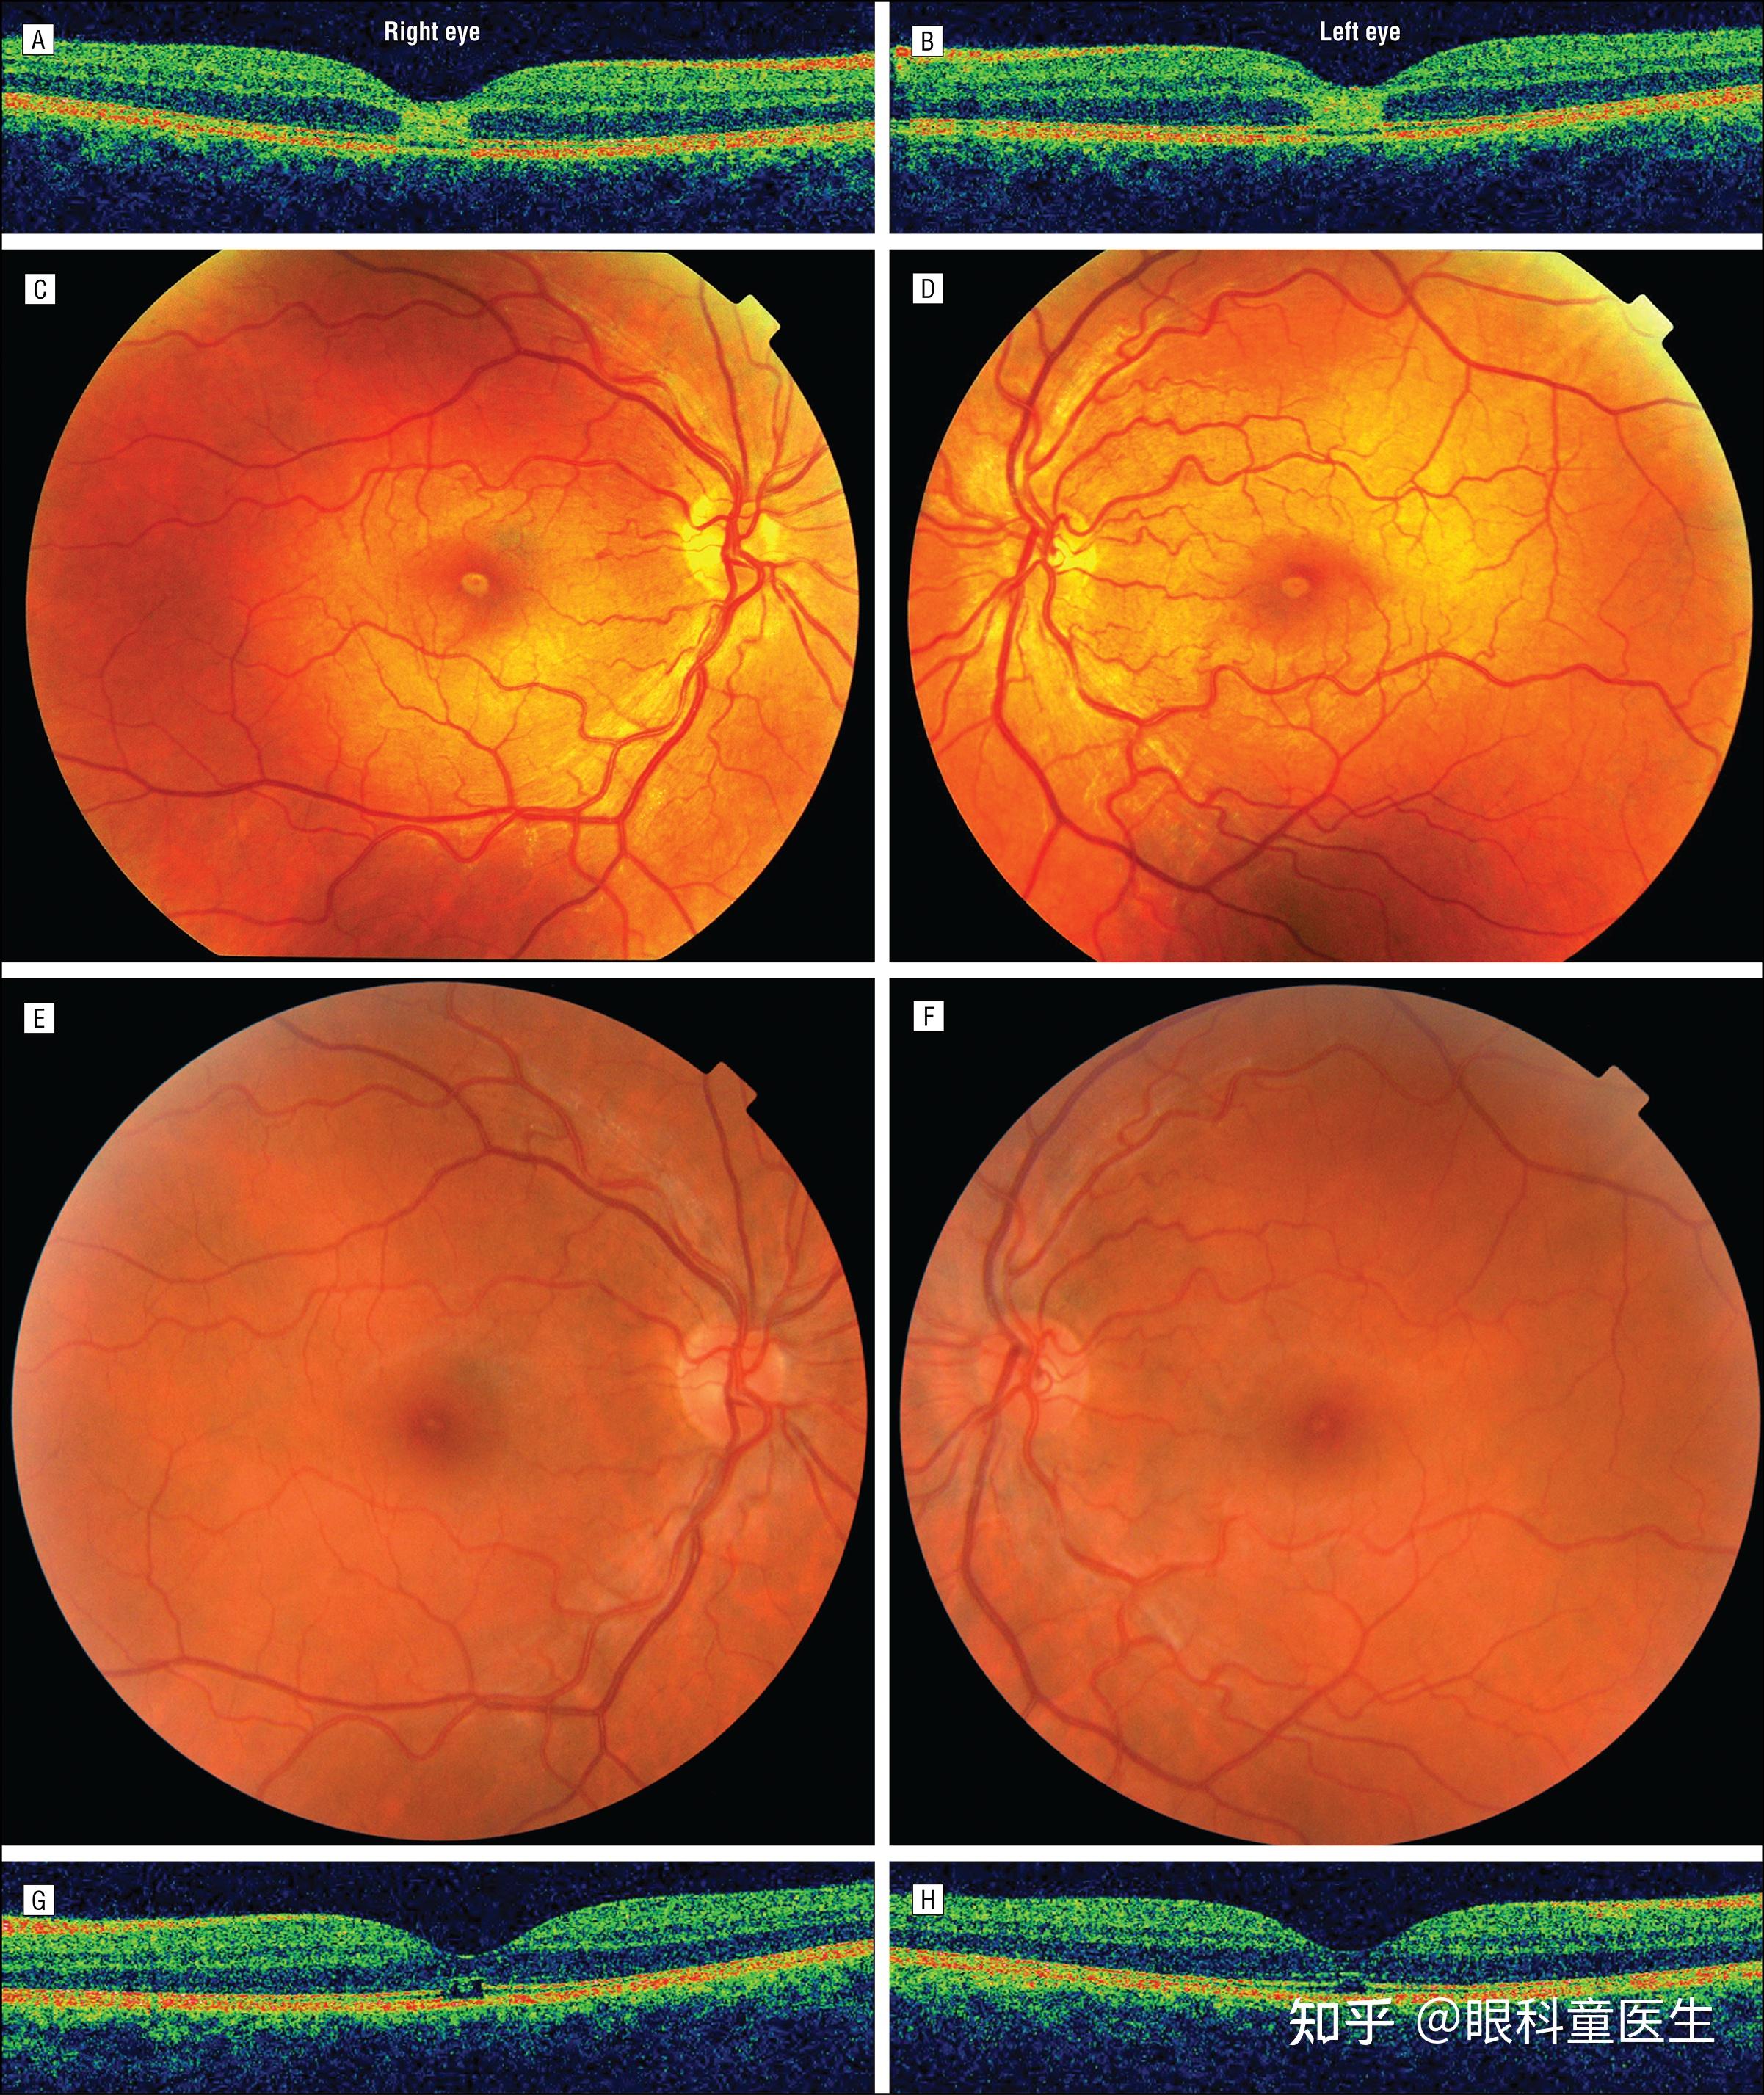 与系统性疾病相关的视网膜病变——2、糖尿病视网膜病变 - 知乎